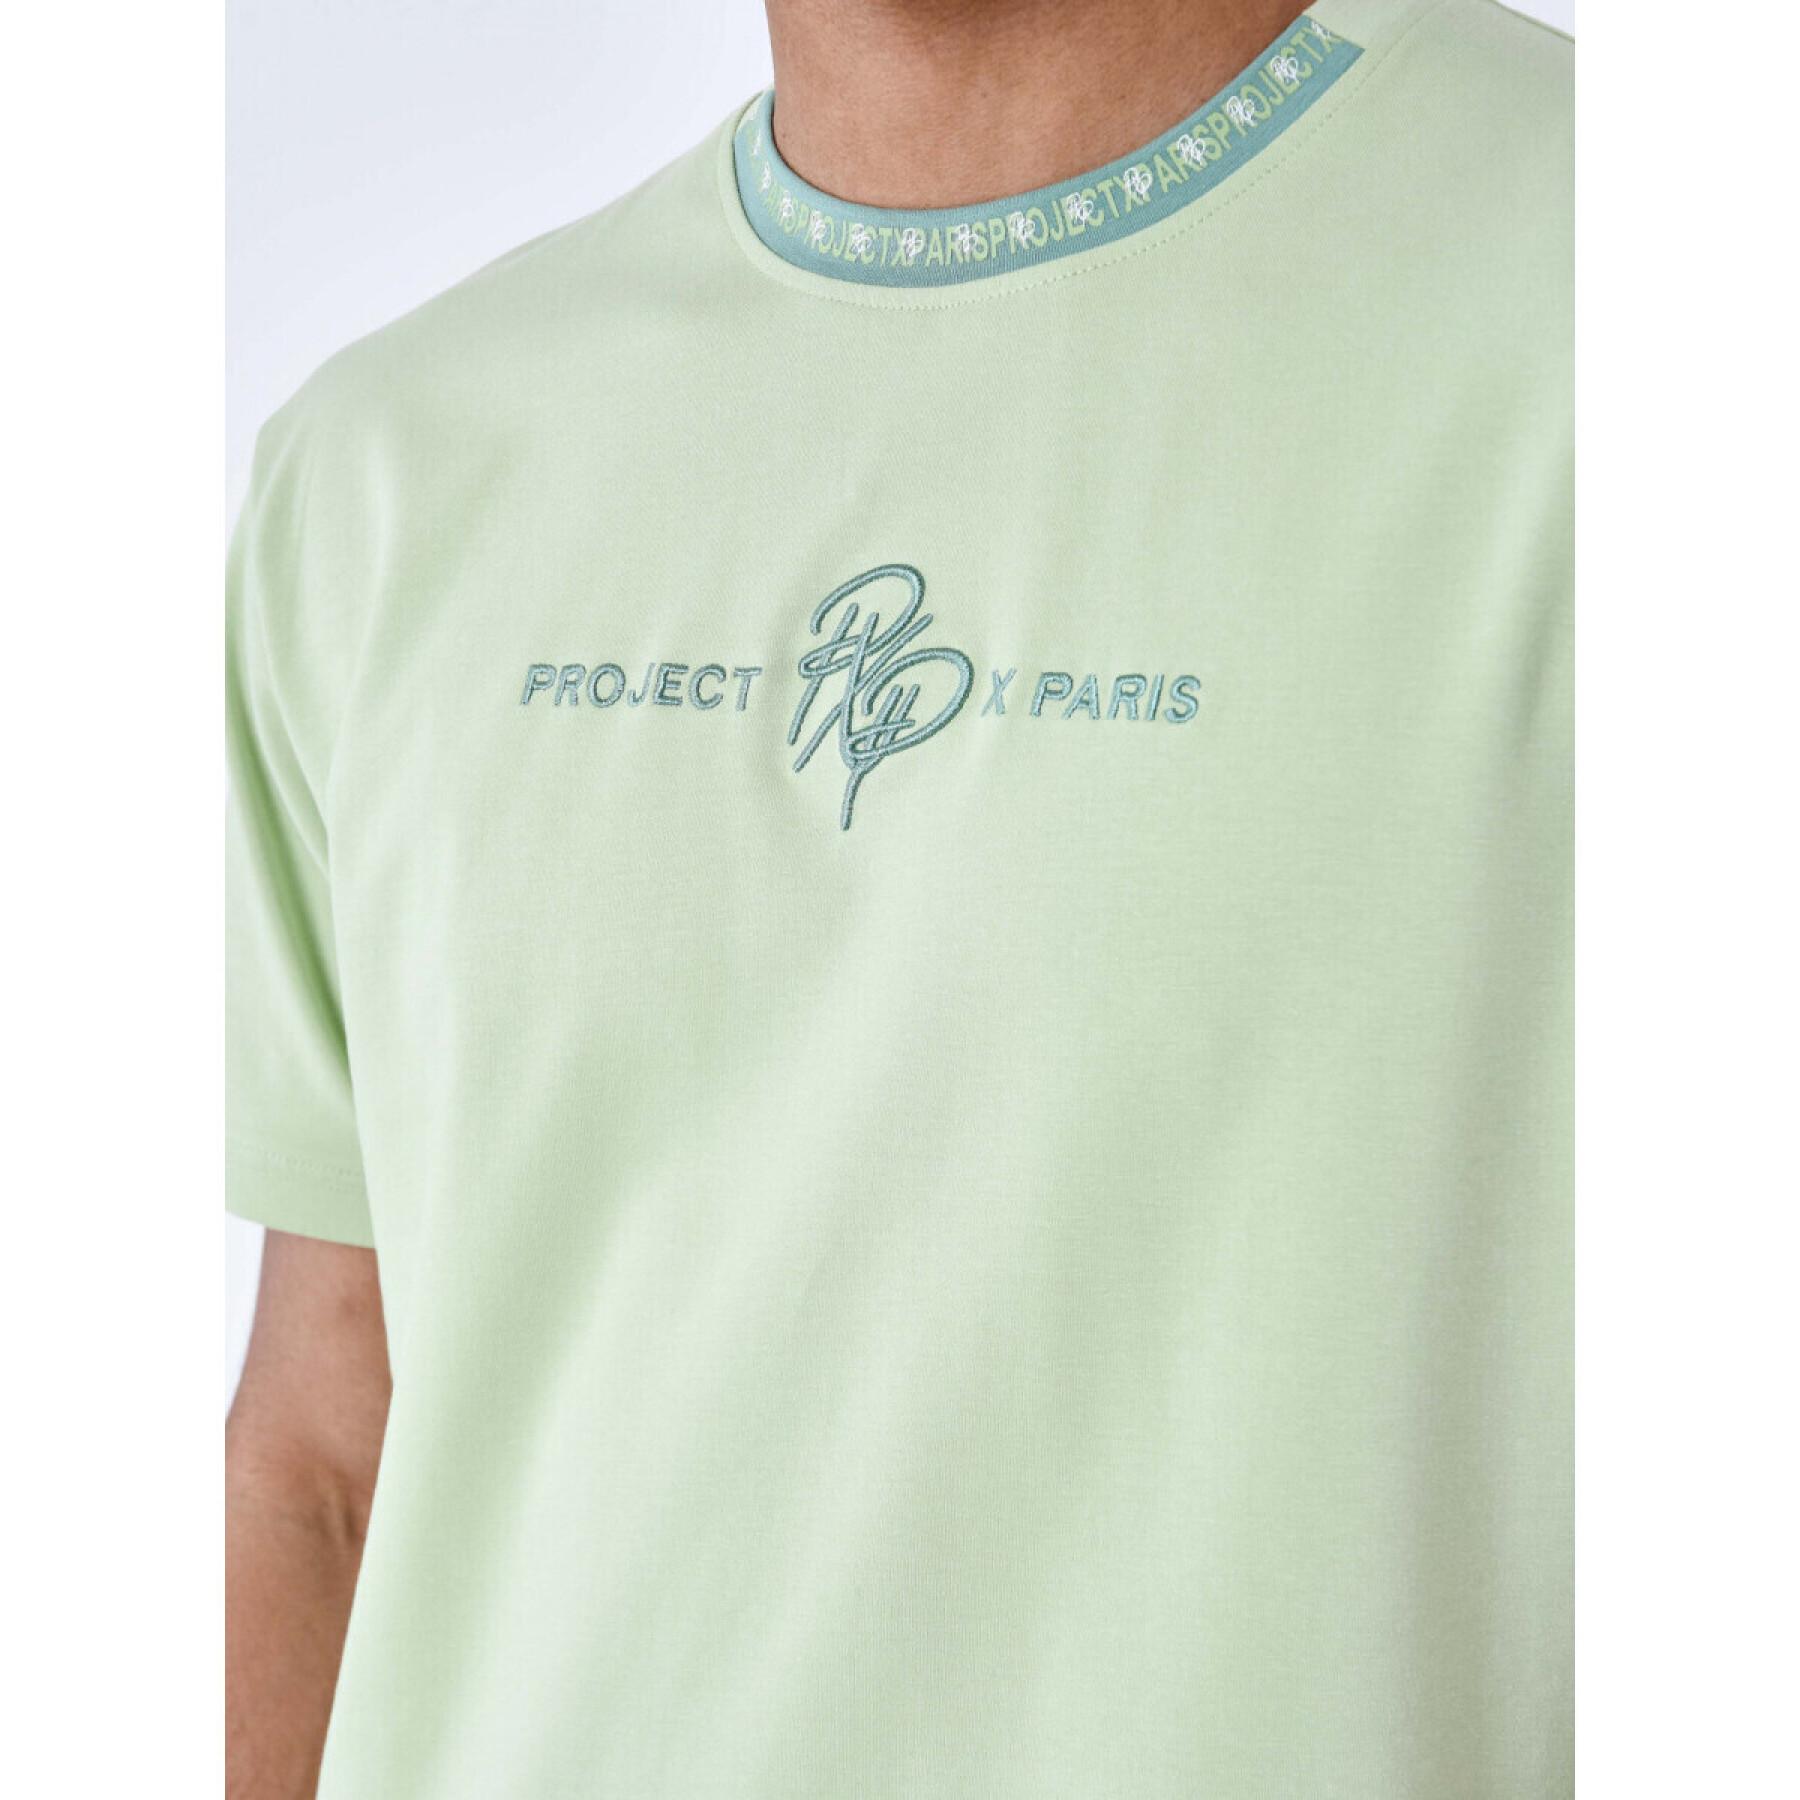 T-shirt con logo Project X Paris